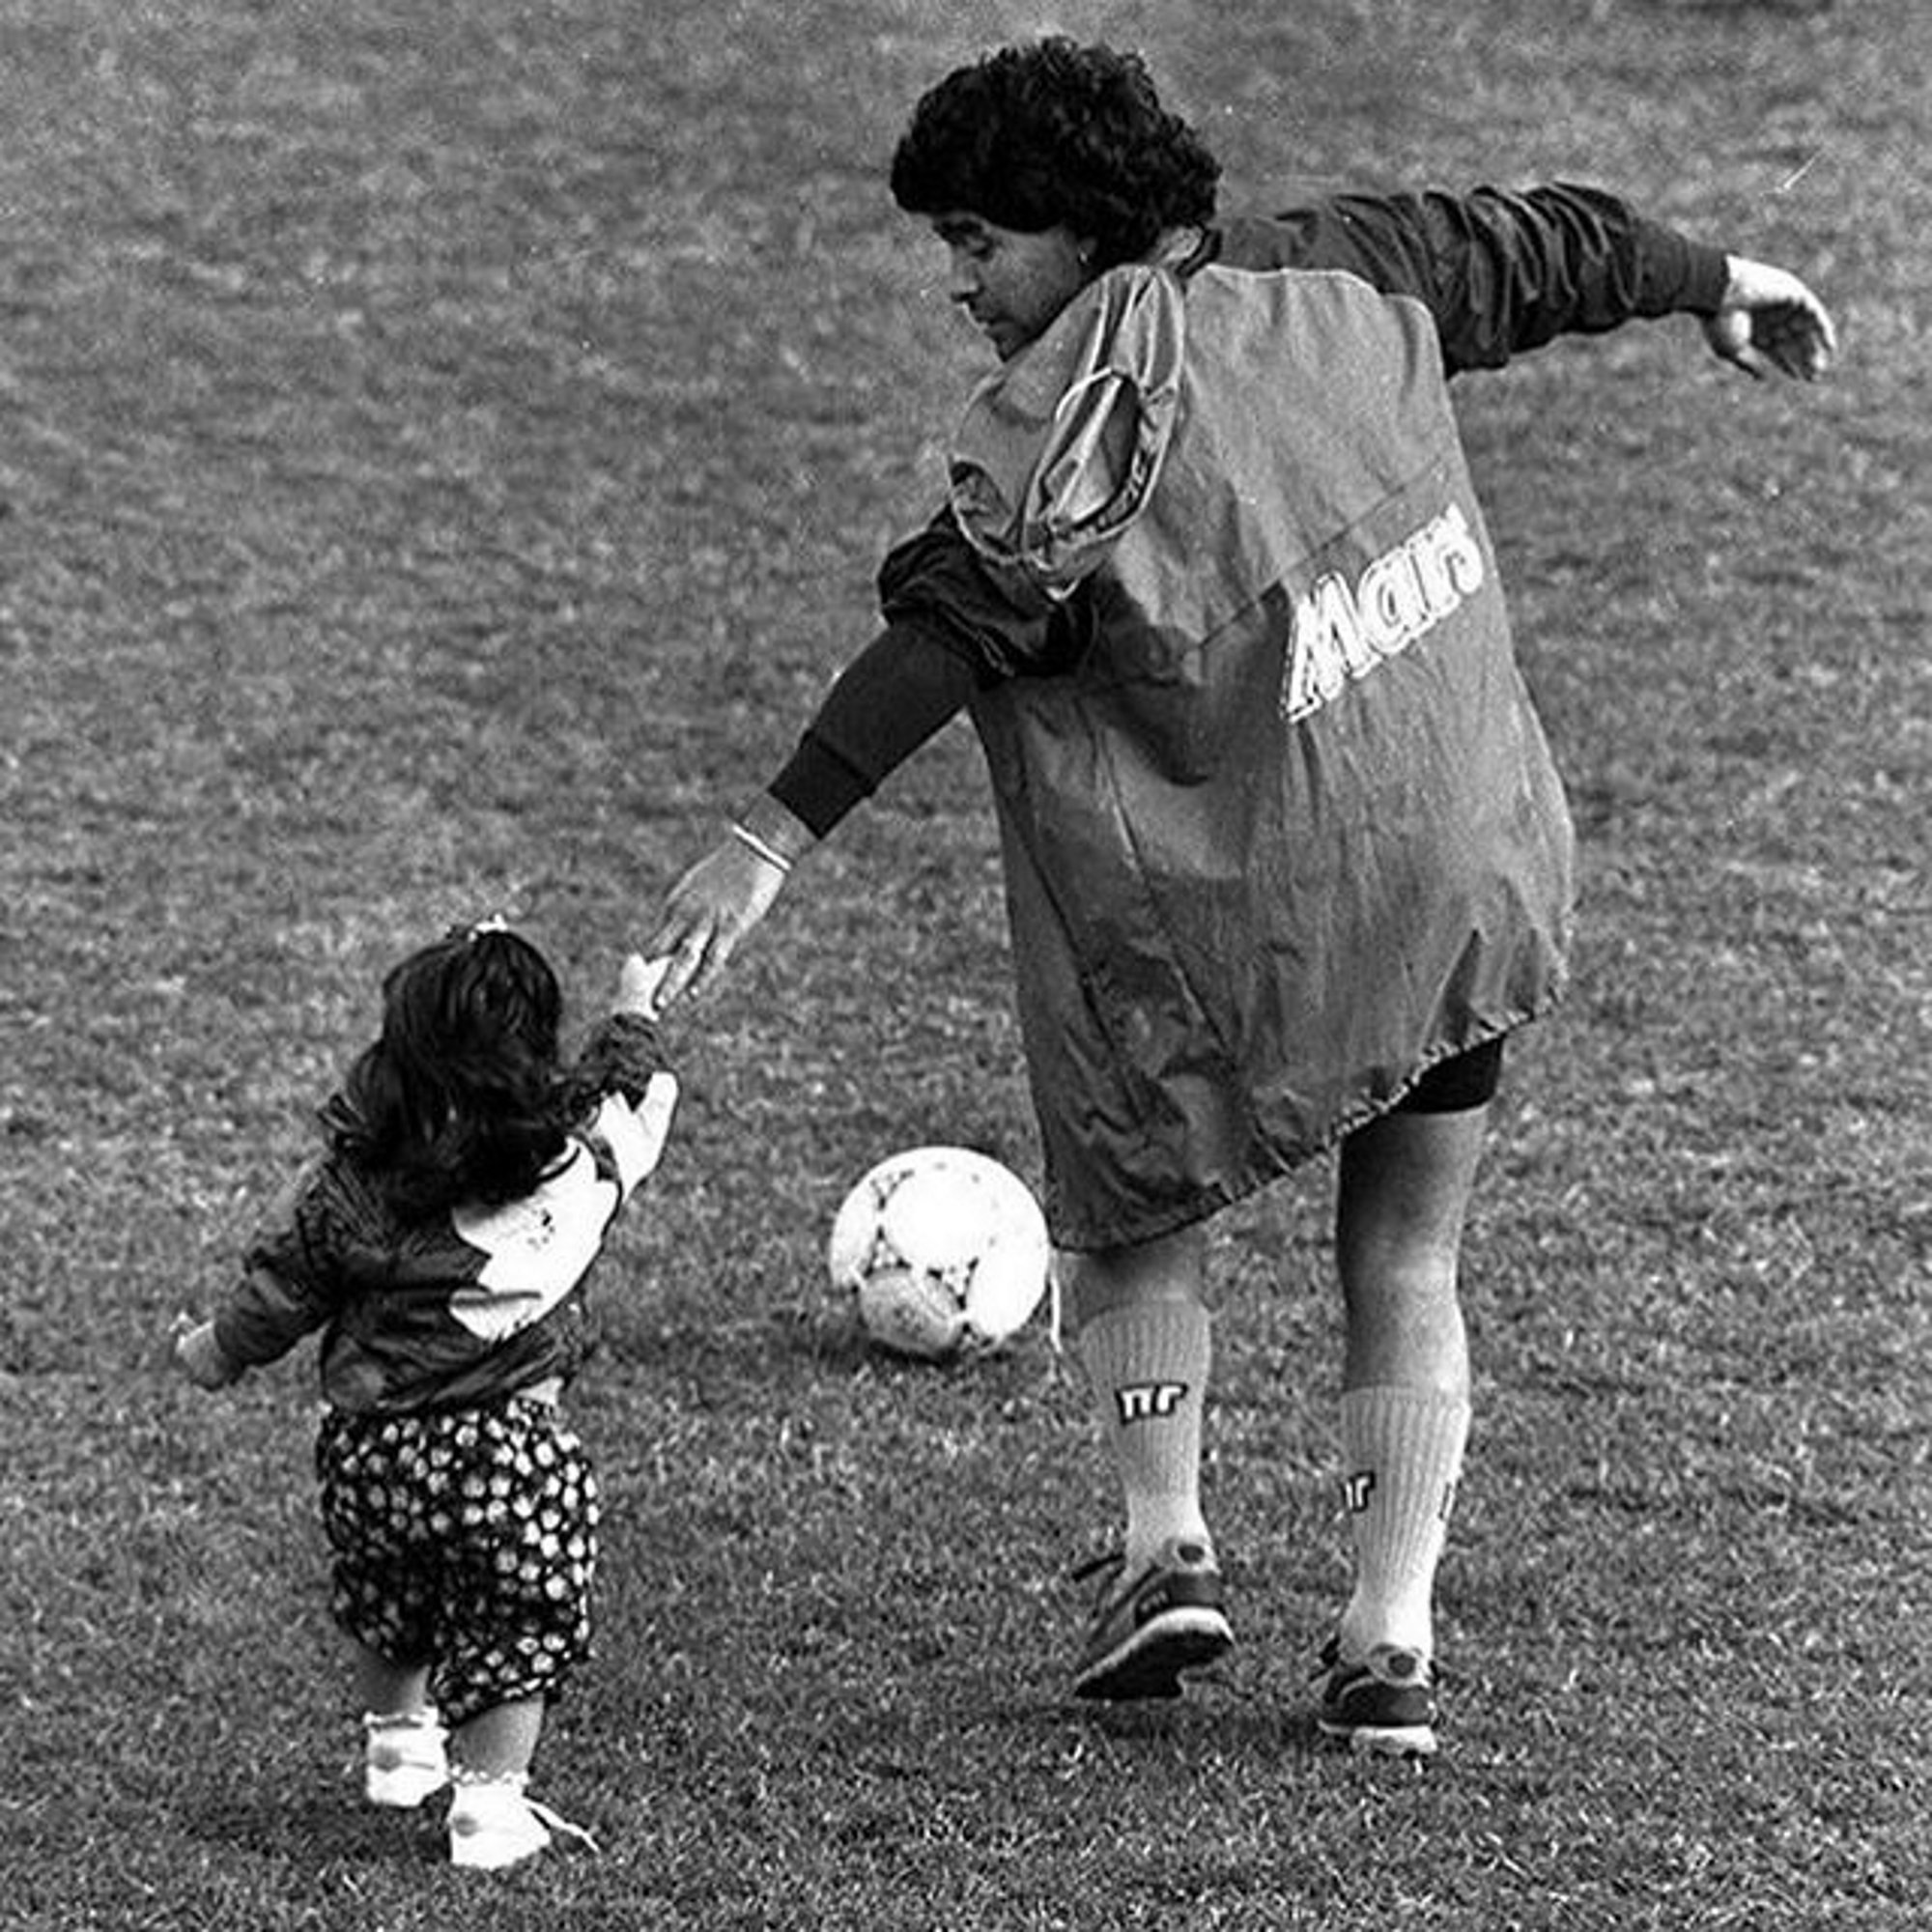 Maradona explota contra su hija: "No me estoy muriendo, no les dejaré nada"